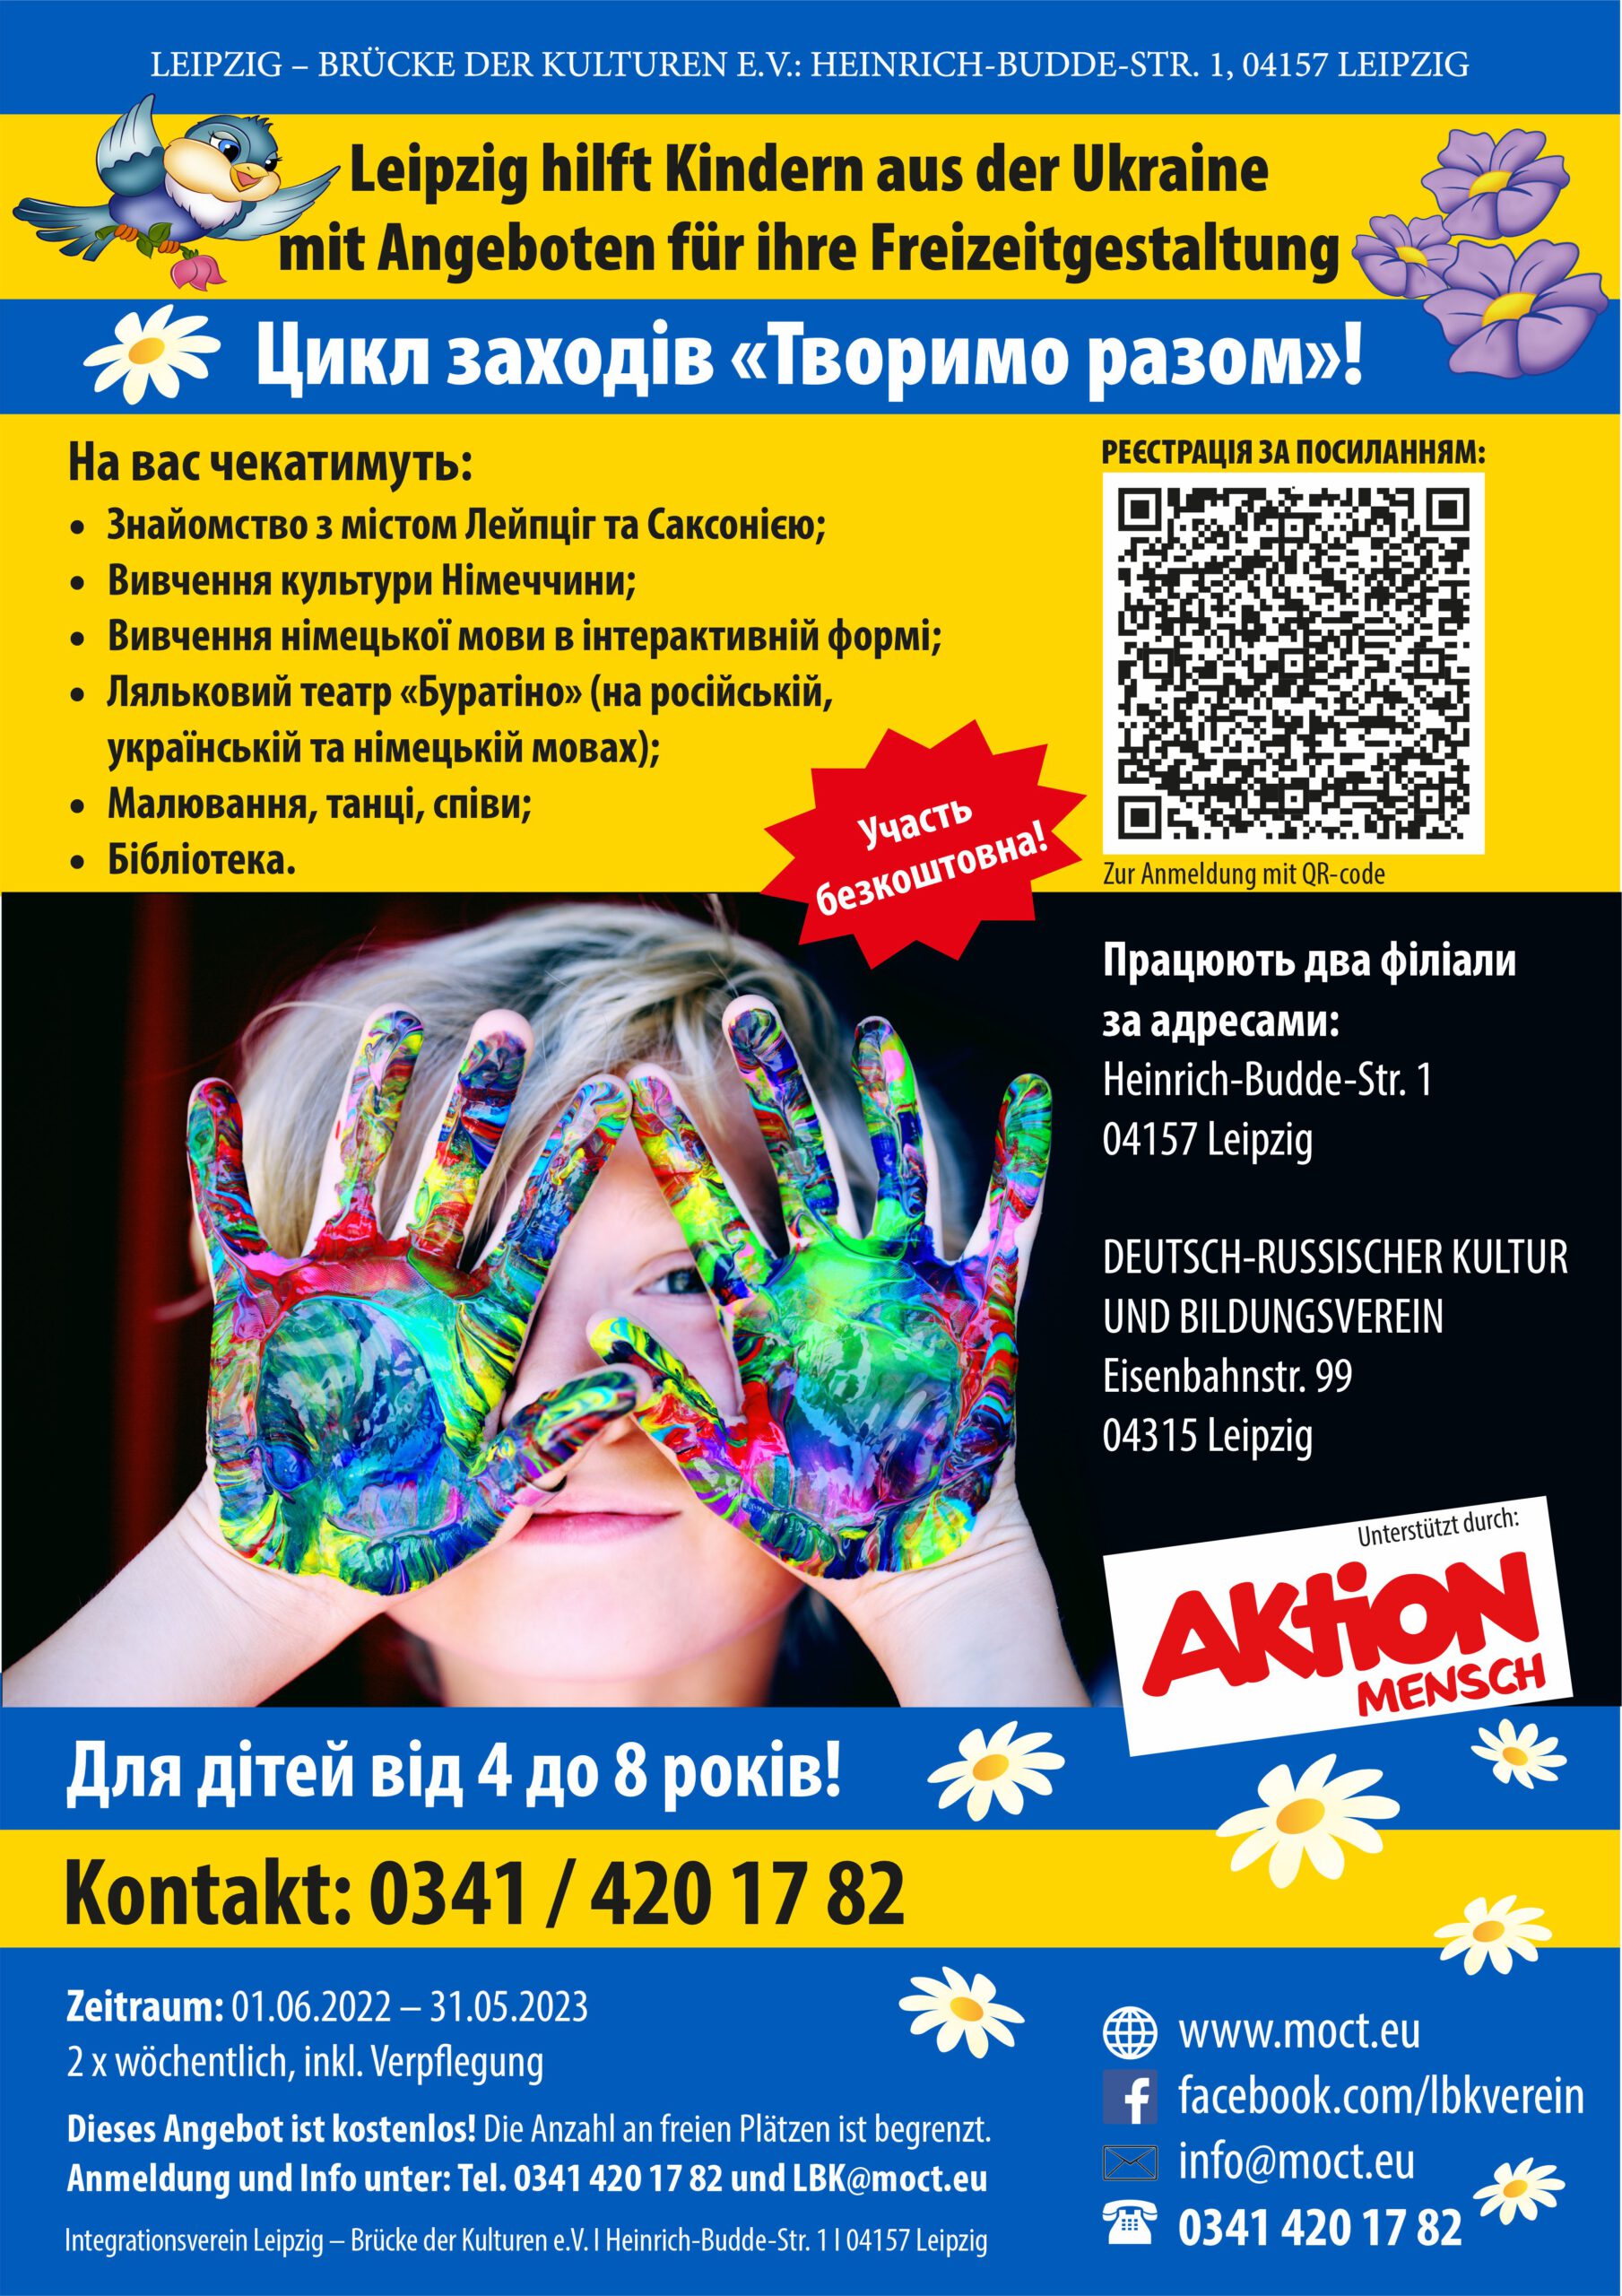 Freizeitangebote für Kinder aus der Ukraine, Flyer